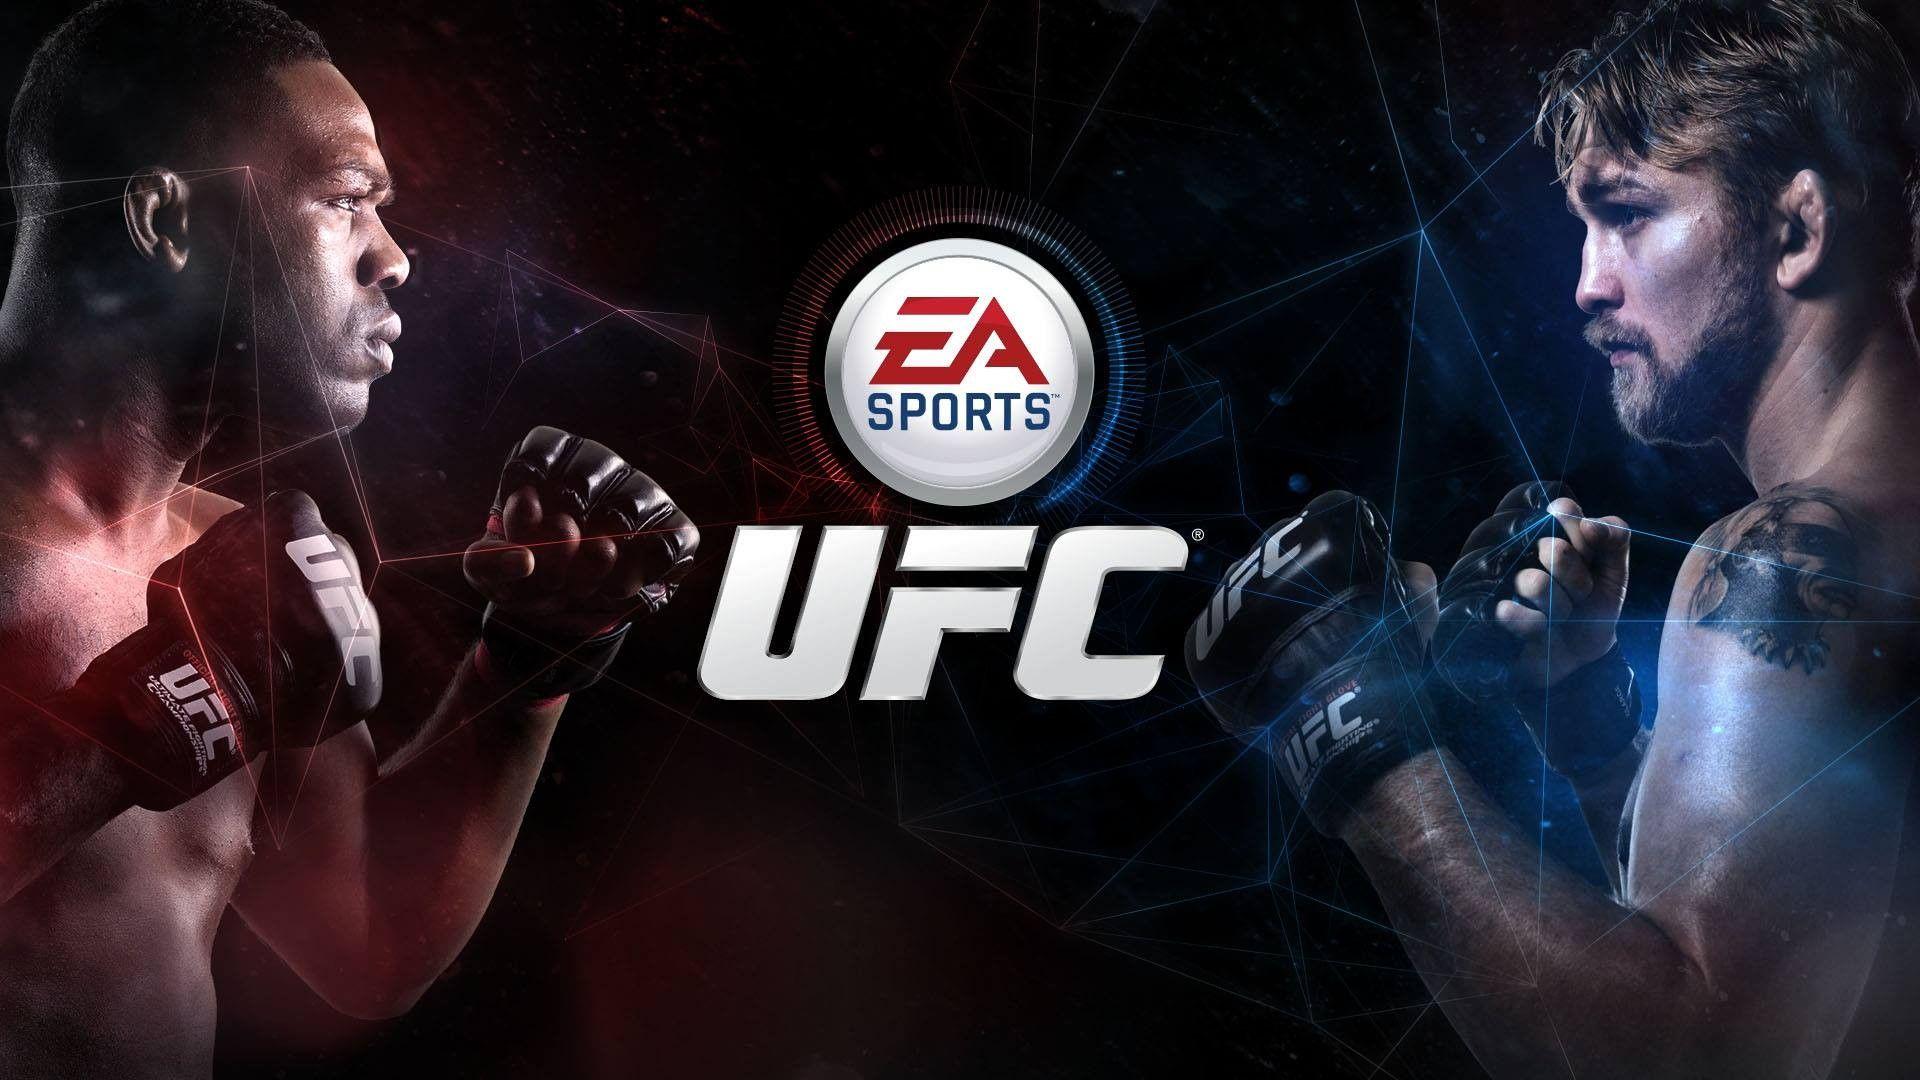 EA Sports UFC, UFC, Jon Jones, Alexander Gustafsson Wallpaper HD